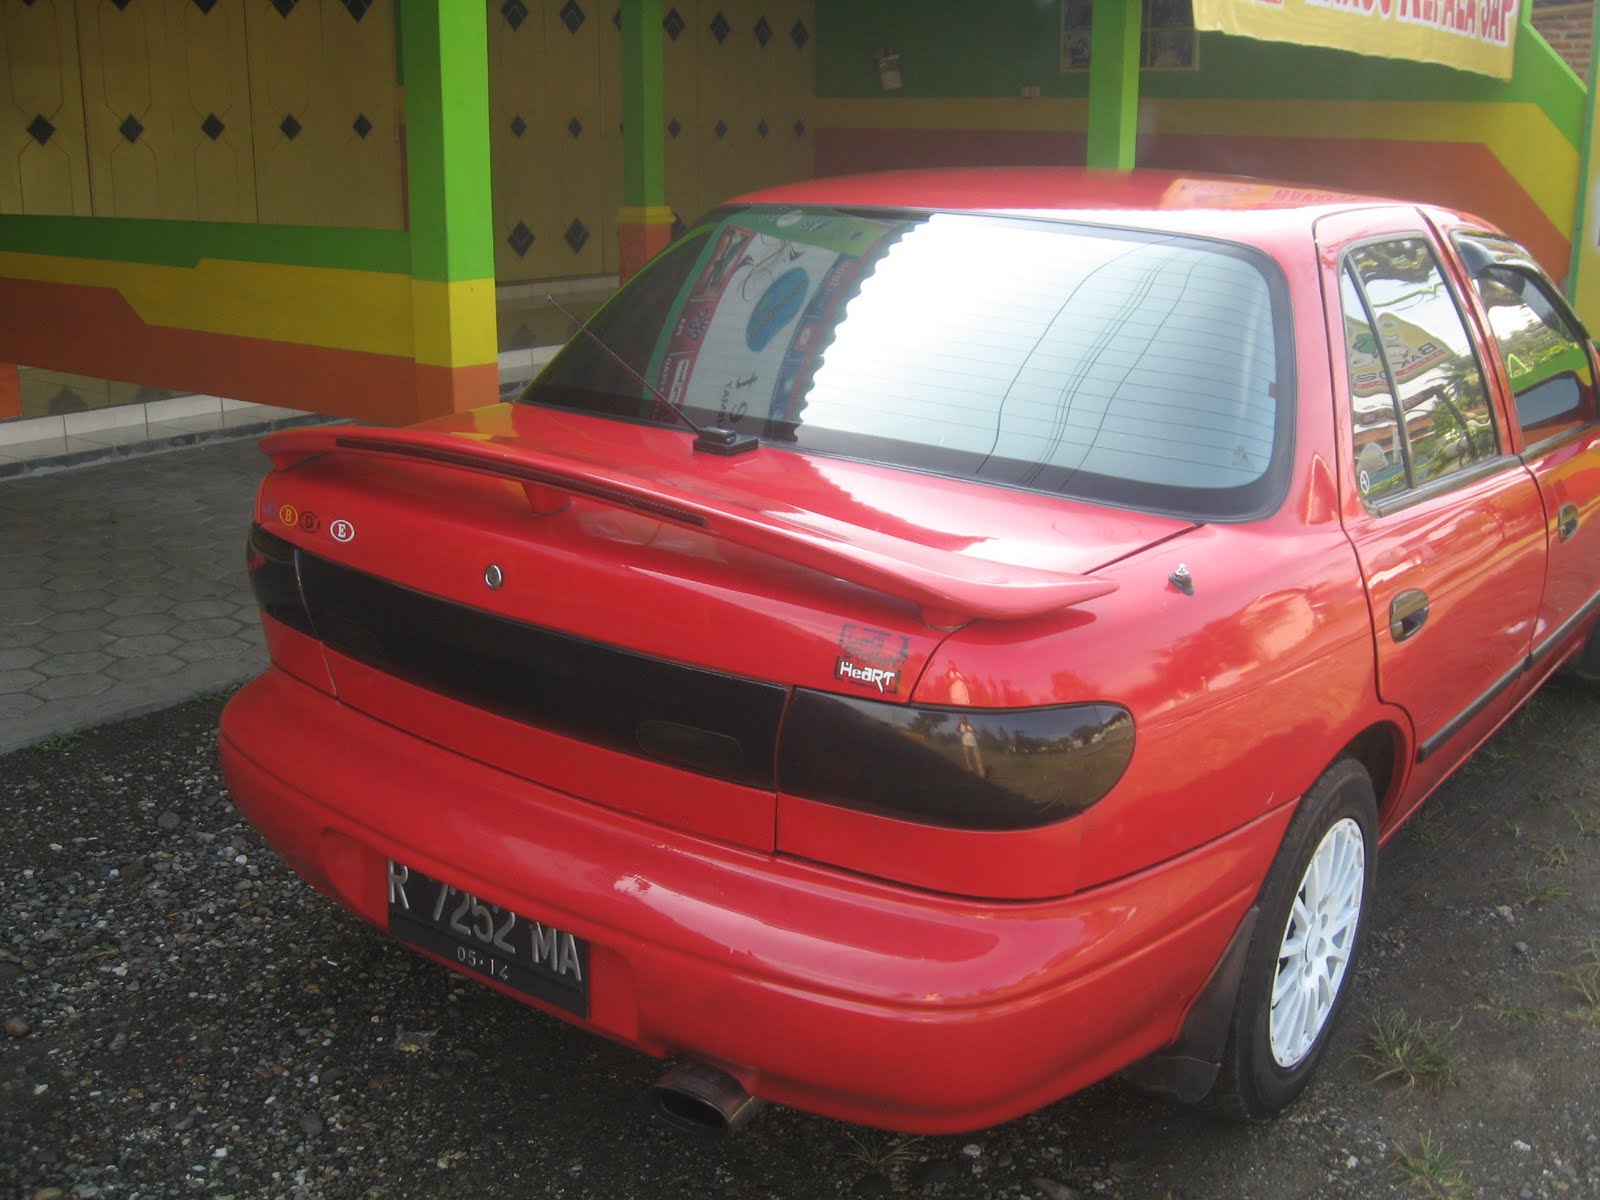 Harga Mobil  Murah  Harga Murah  Mobil  Bekas  Timor